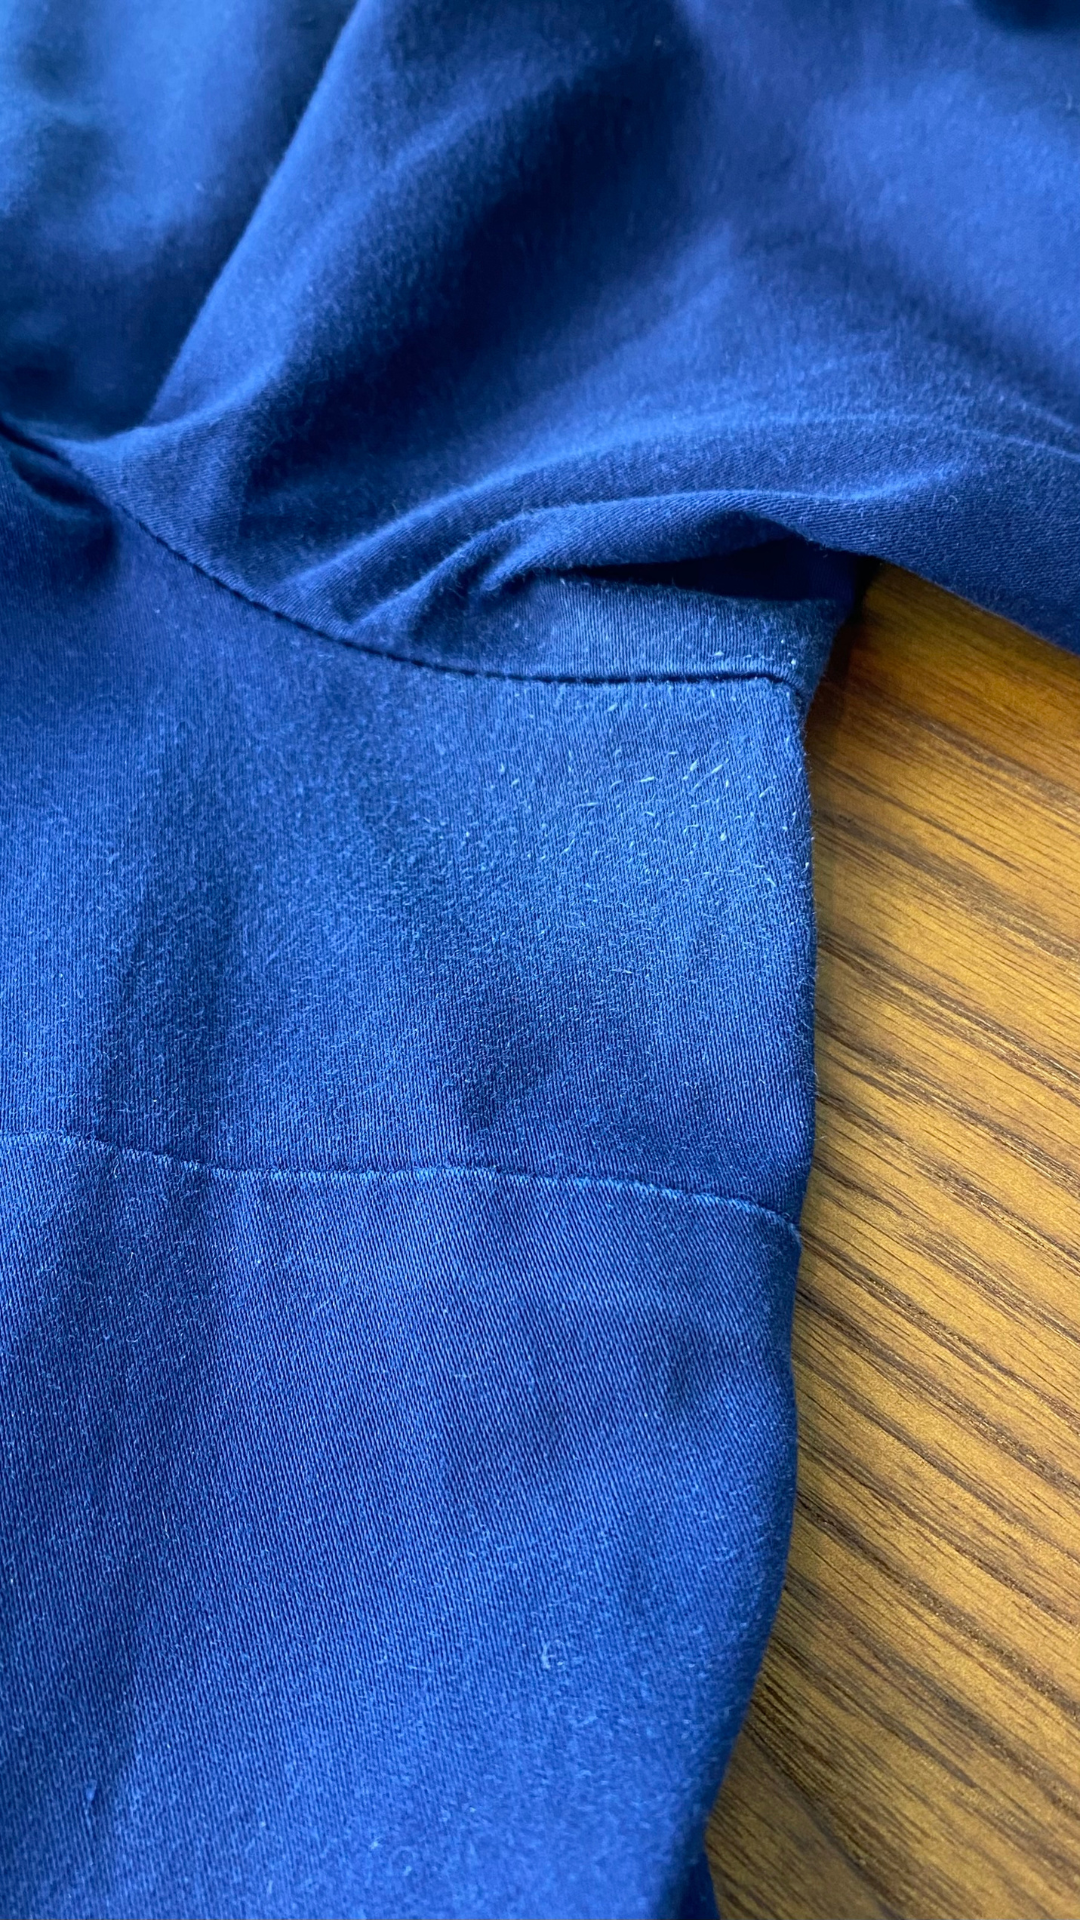 Robe chemisier à jupe ample et poches, imparfaite, marque Atelier b, taille xl (fait plus large). Vue de l'aisselle gauche.